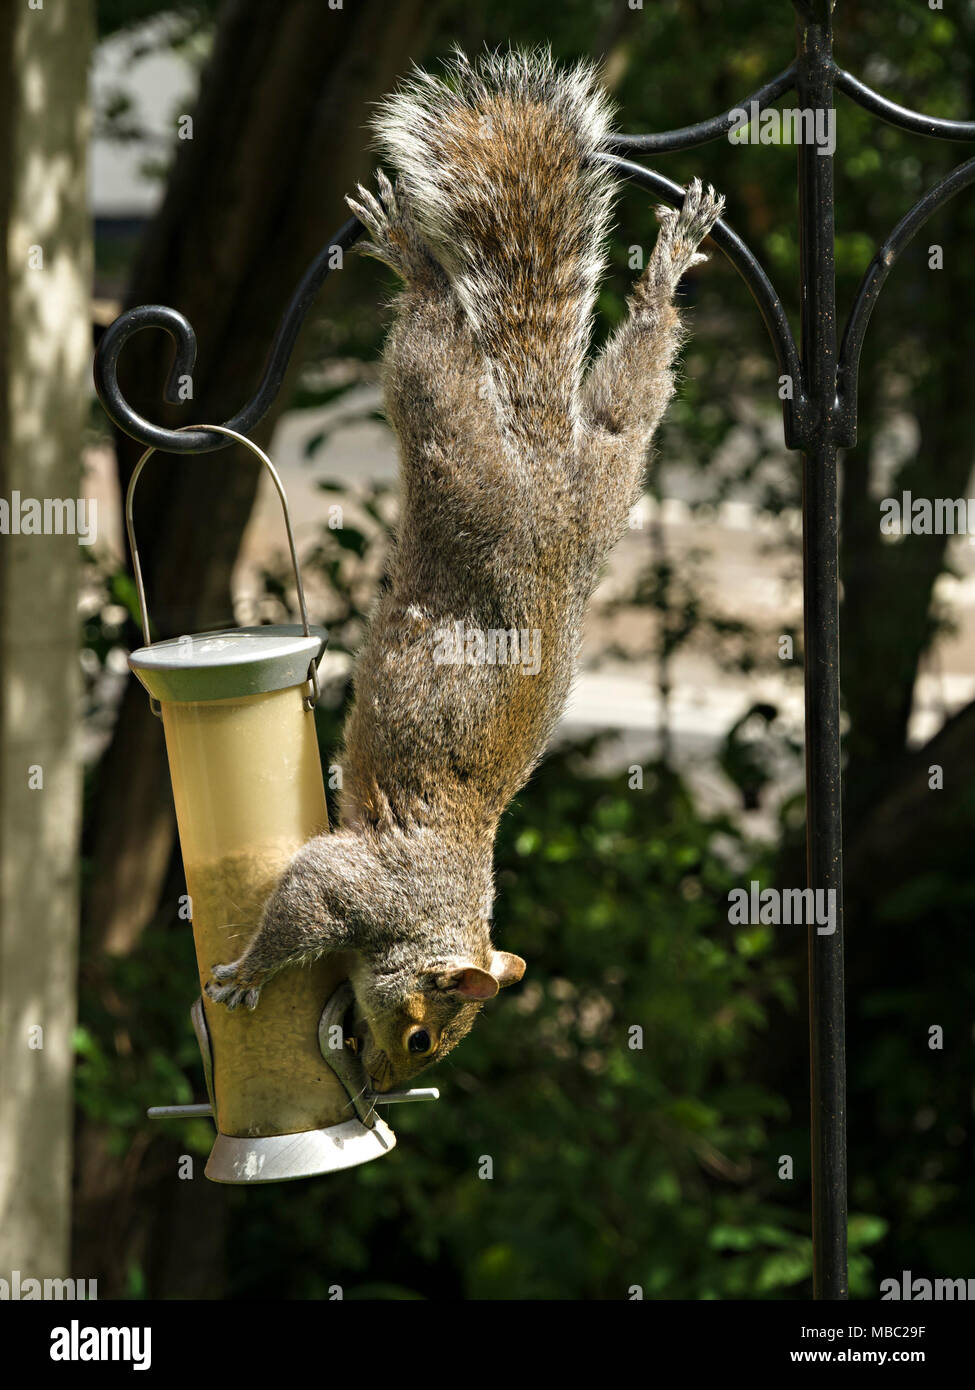 Agile, akrobatische Grauhörnchen (Sciurus carolinensis) mit der Oberseite nach unten hängend stehlen Essen aus dem Garten Vogelfutter Feeder, England, Großbritannien Stockfoto